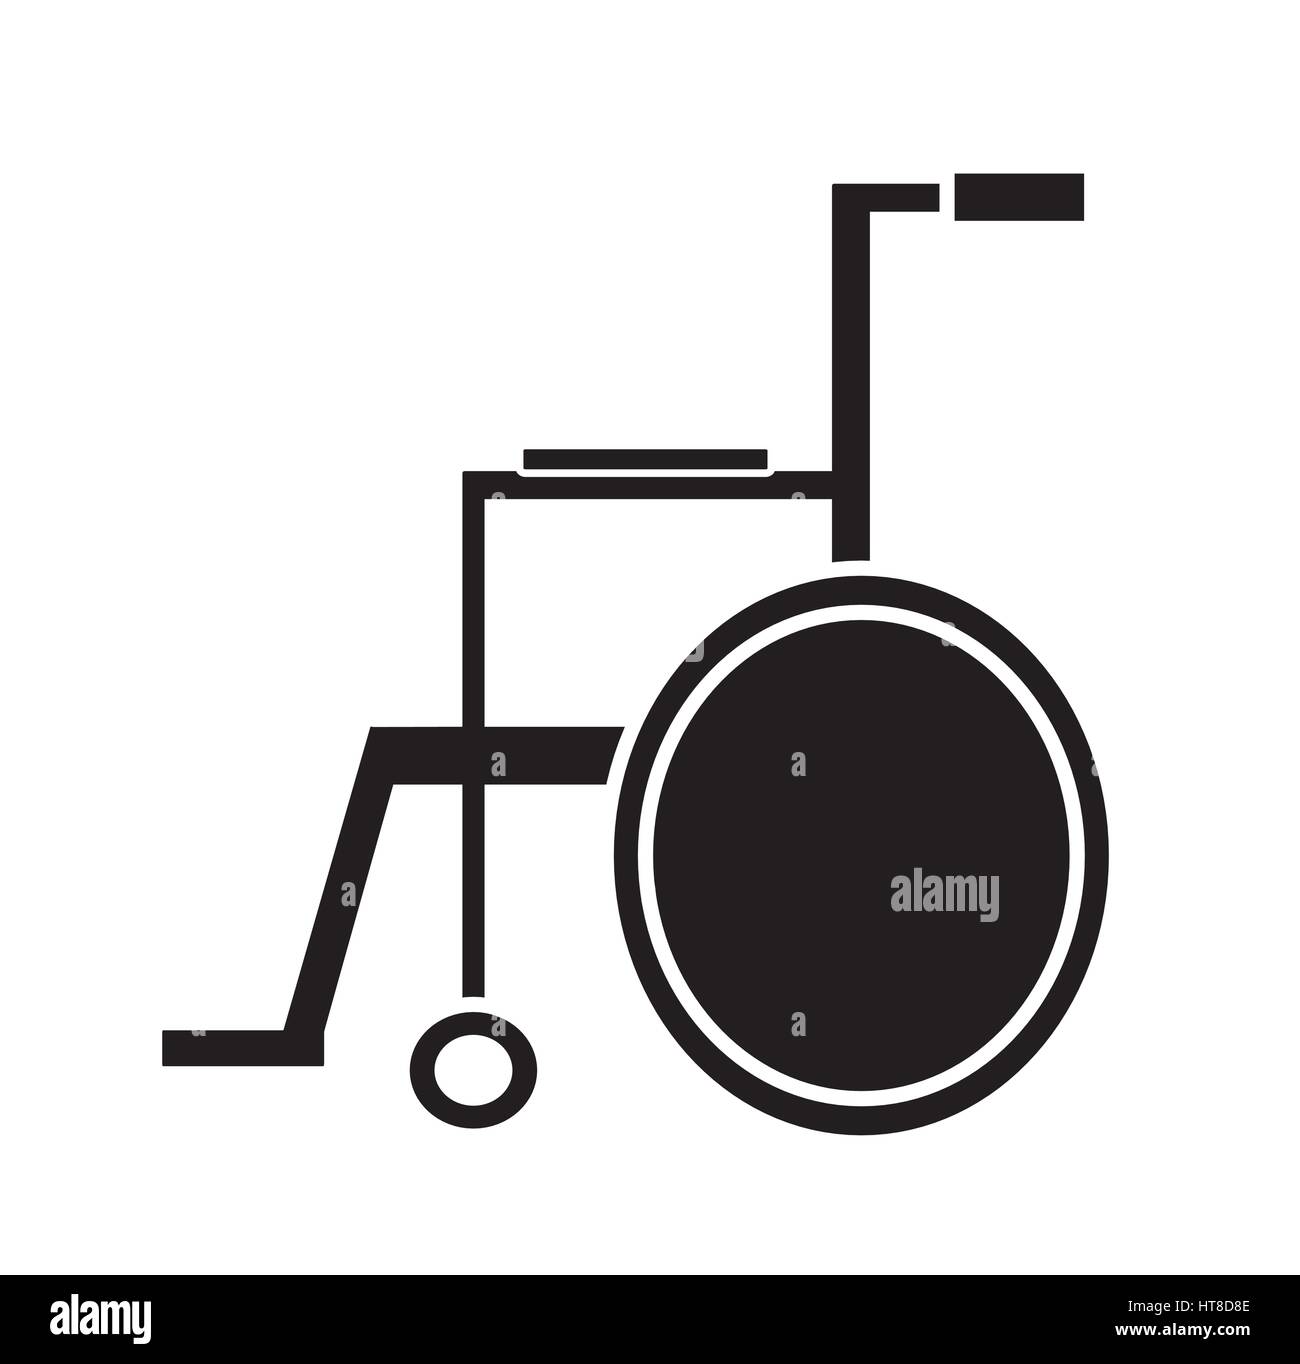 Bianco e nero sedia a rotelle medico vettore icona isolato in uno sfondo bianco. Icone mediche. handicap sedia sedia a rotelle della ruota illustrazione vettori eps Illustrazione Vettoriale